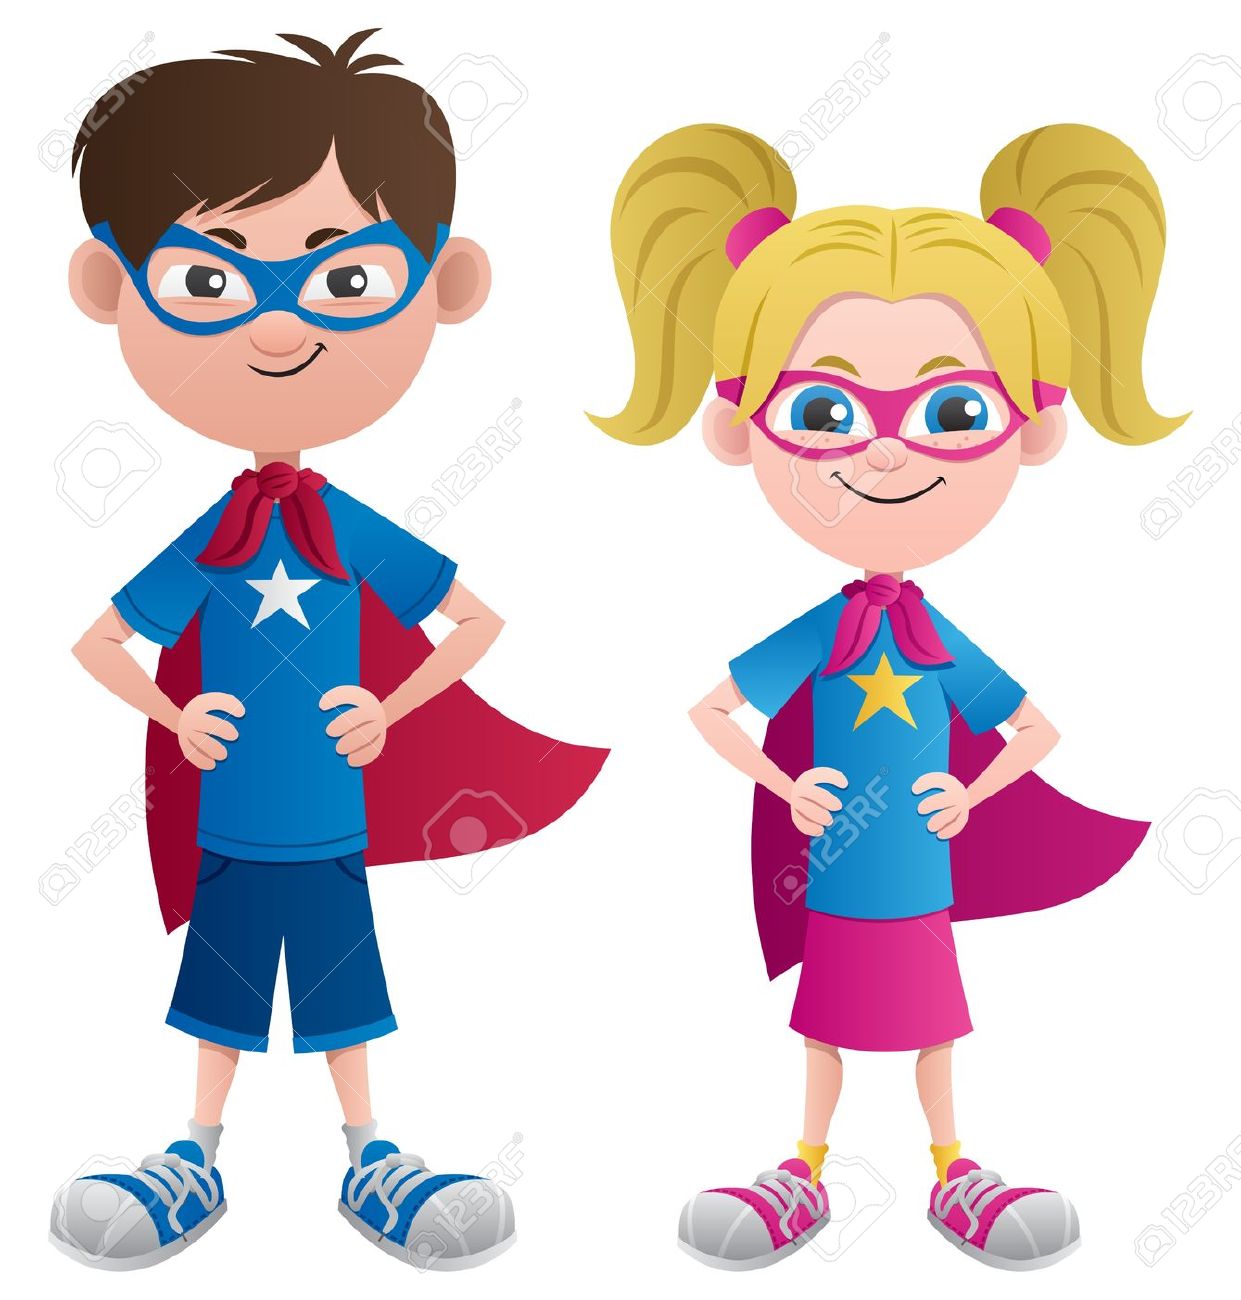 superhero kids: Illustration .